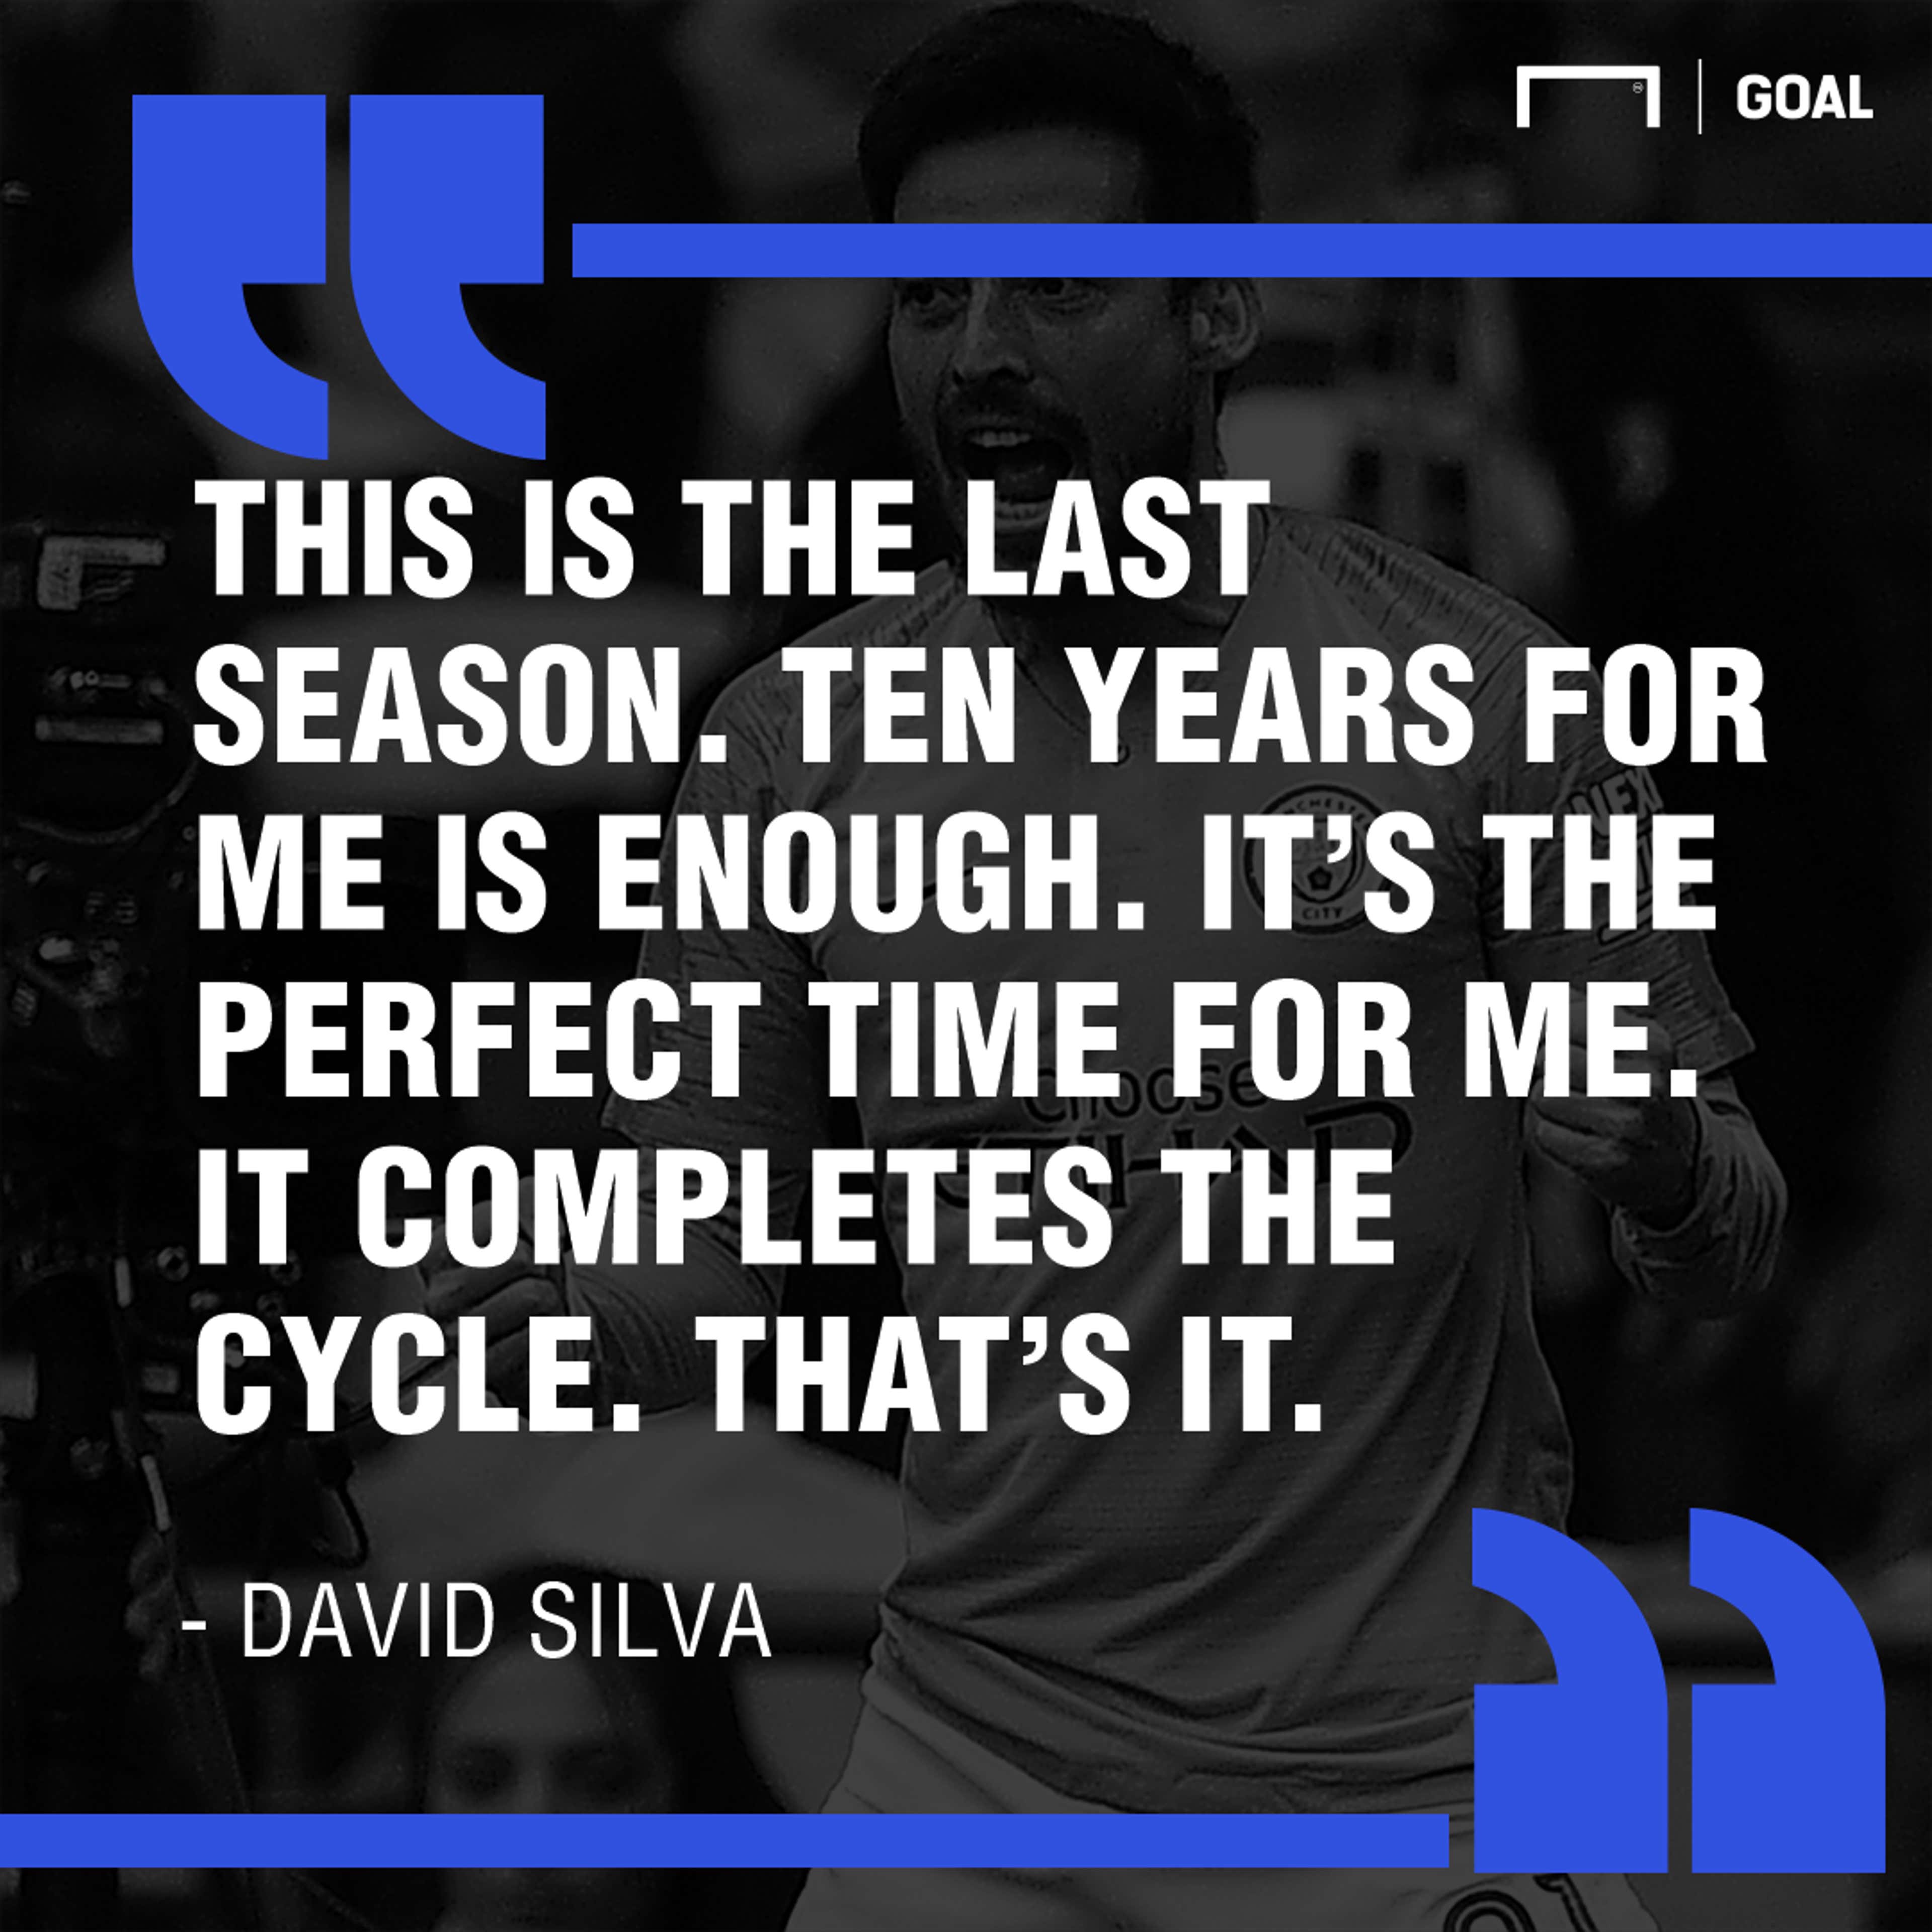 David Silva quote